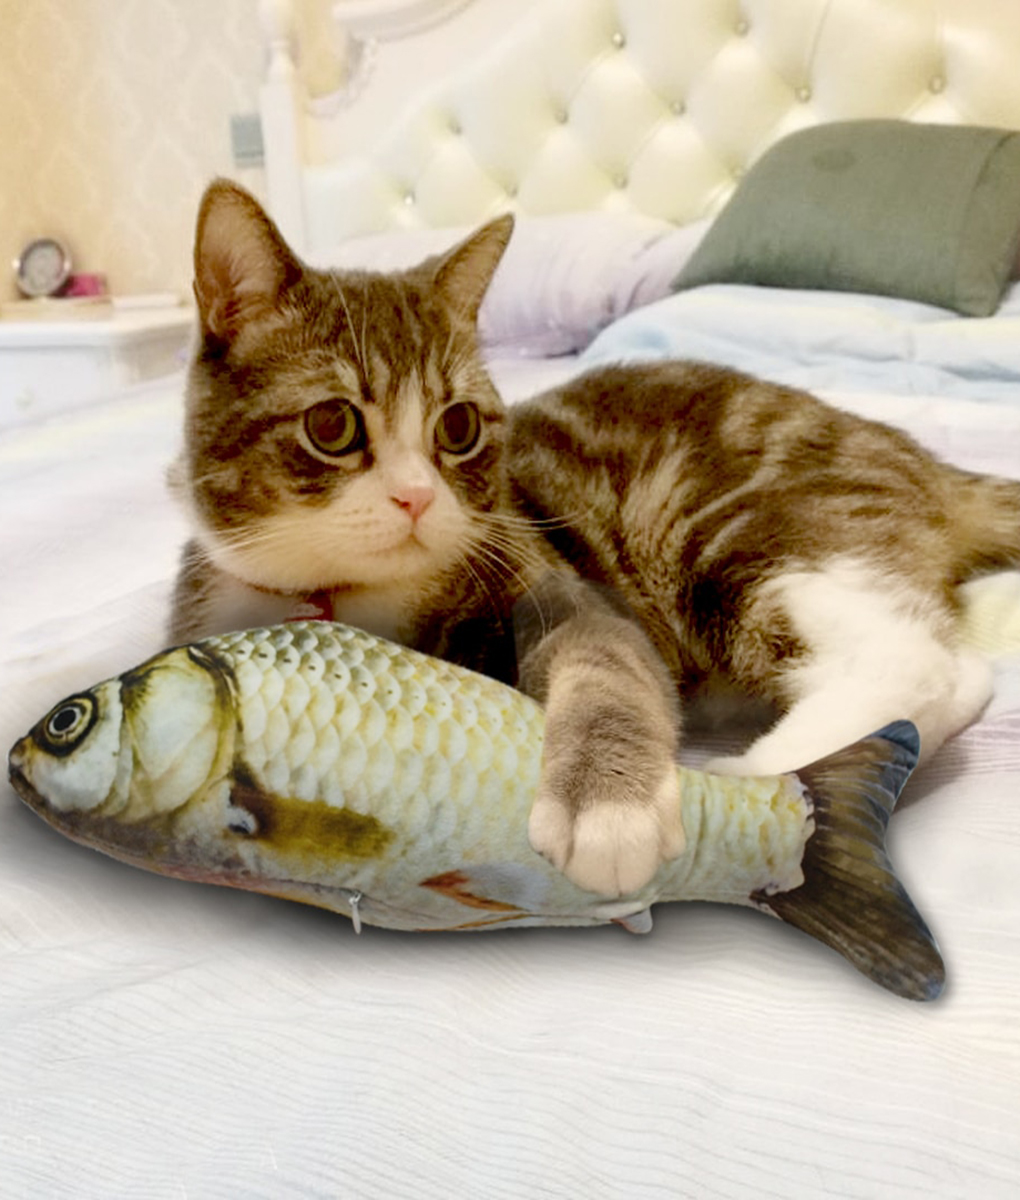 Pet Cat Kitten Chewing Fish Stuffed Mint Catnip Simulation Playing Plush Toy 